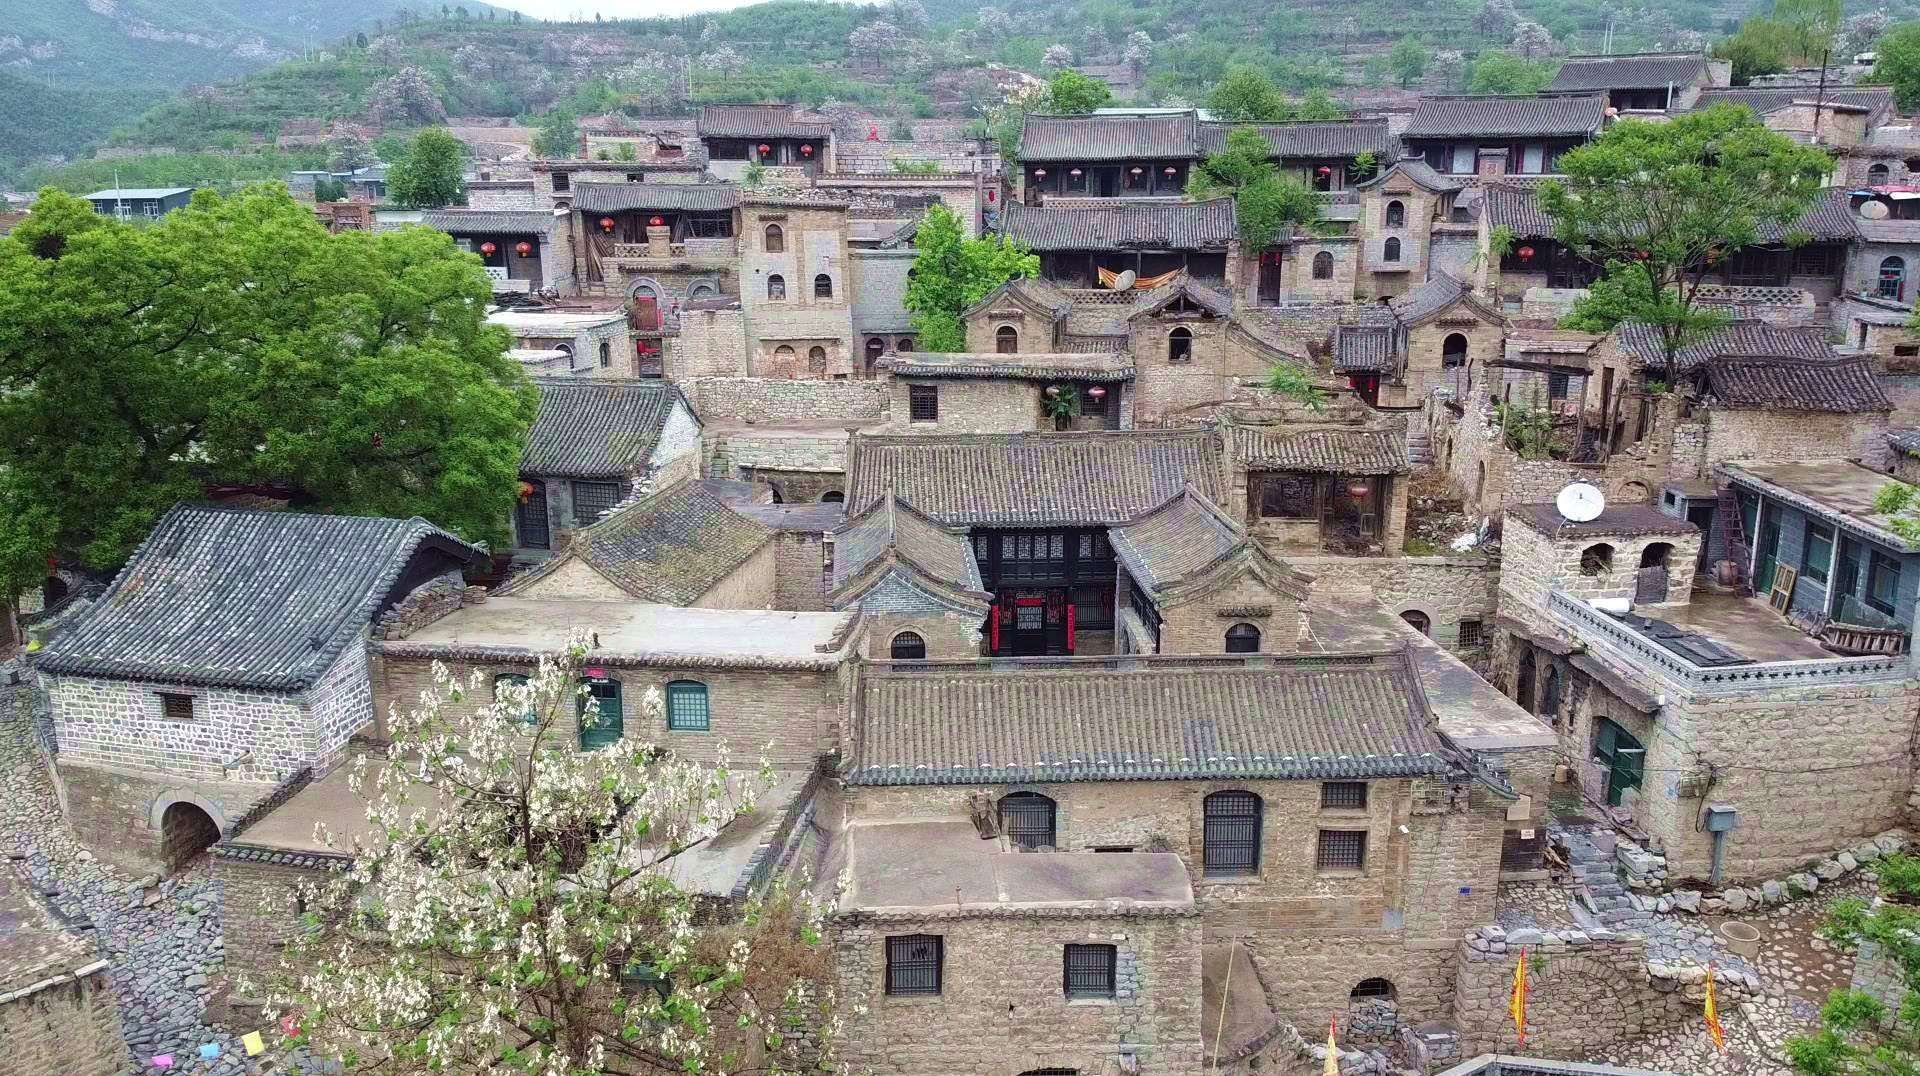 中国历史文化民村石家庄井陉县大梁江村,号称河北的"乔家大院"